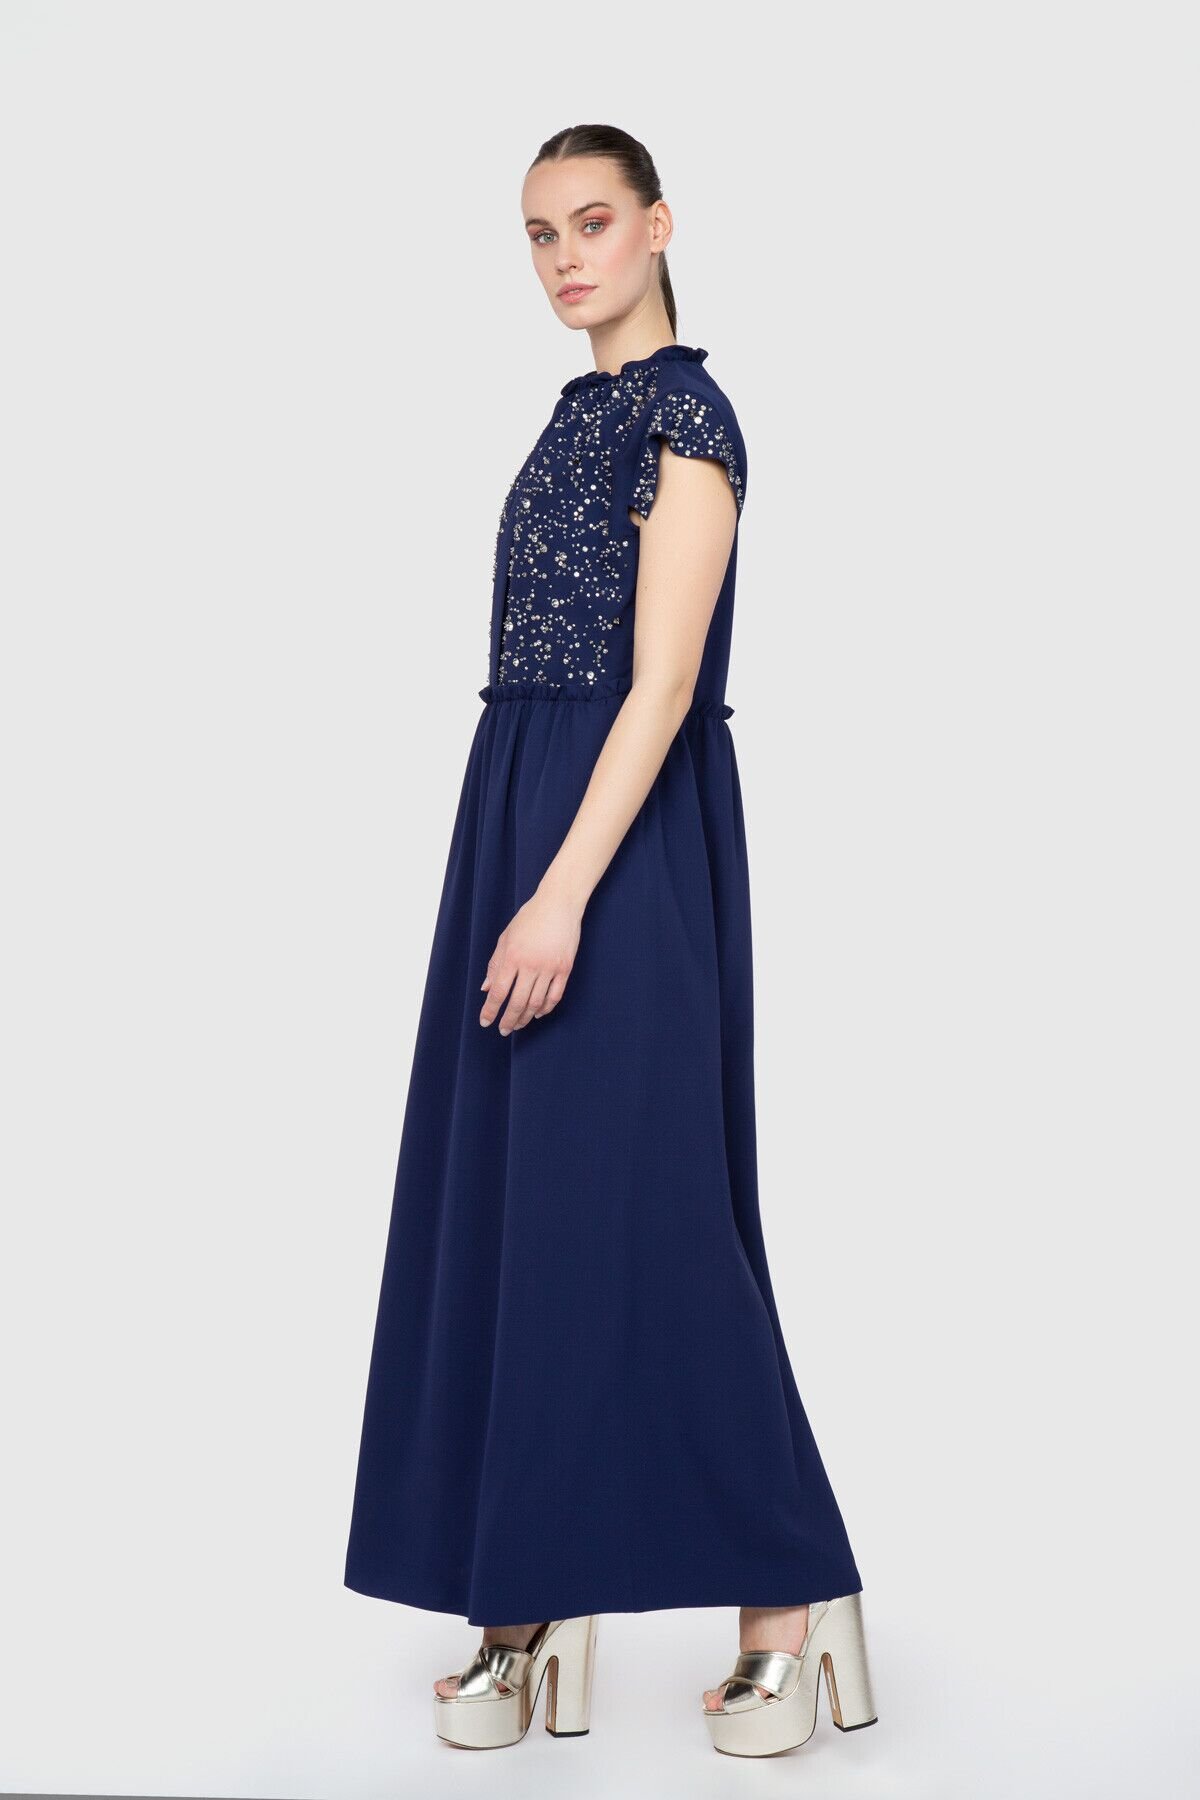 Dice Kayek İşlemeli Kol Bant Detaylı Uzun Mavi Tasarım Elbise